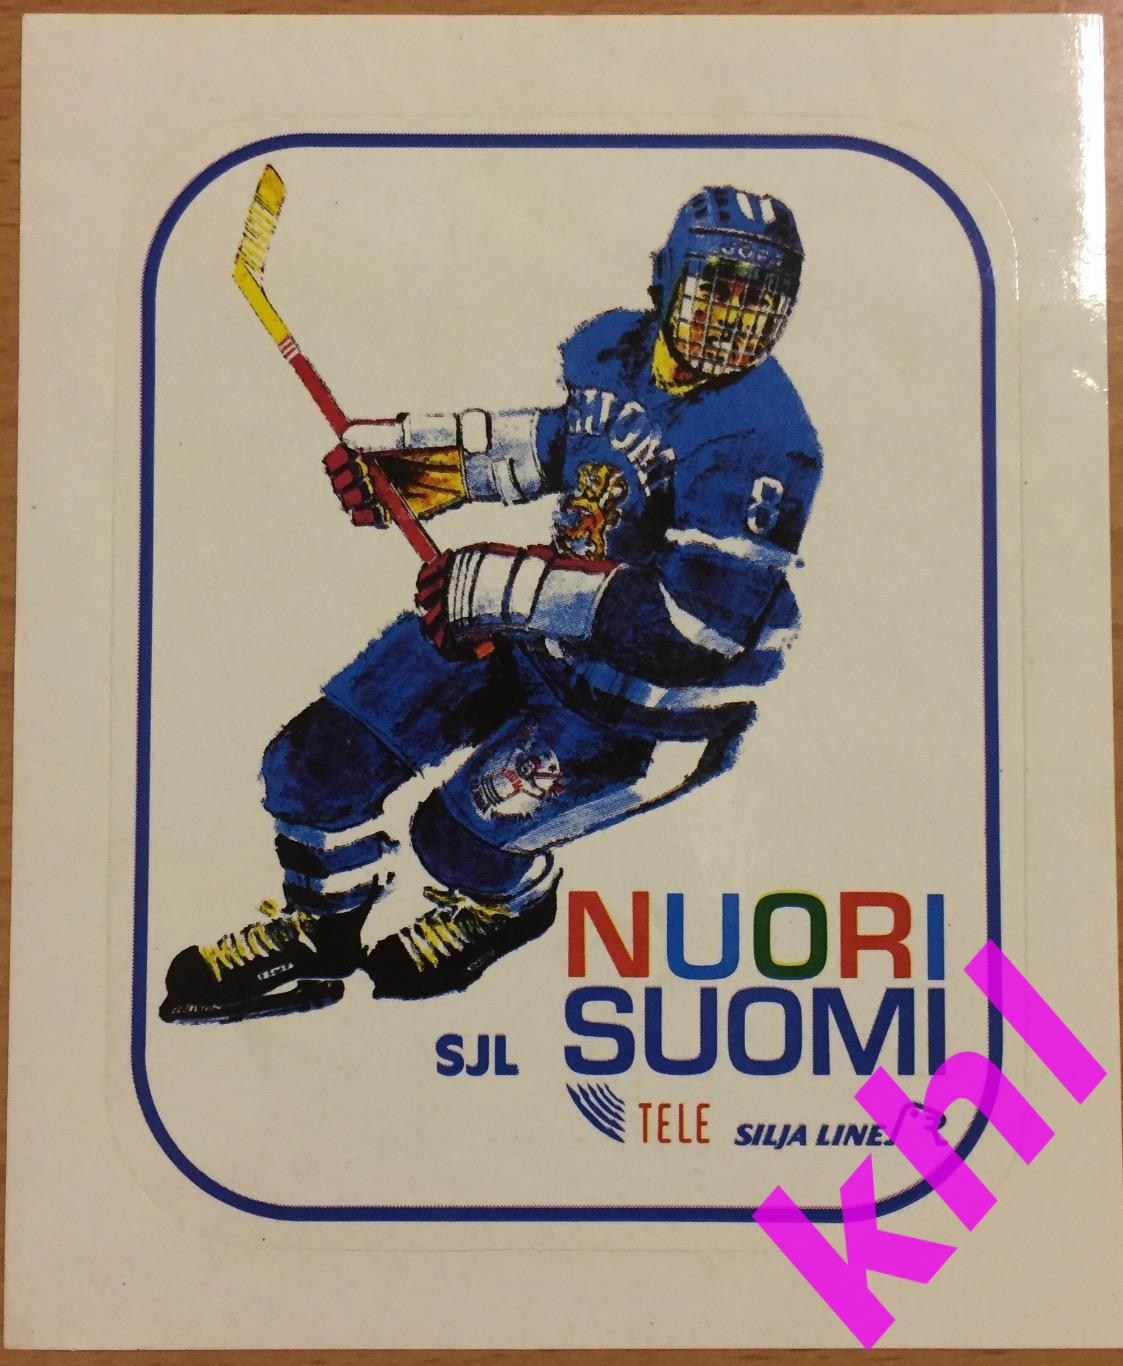 Наклейка из 90-х сборная Финляндии (хоккеист)